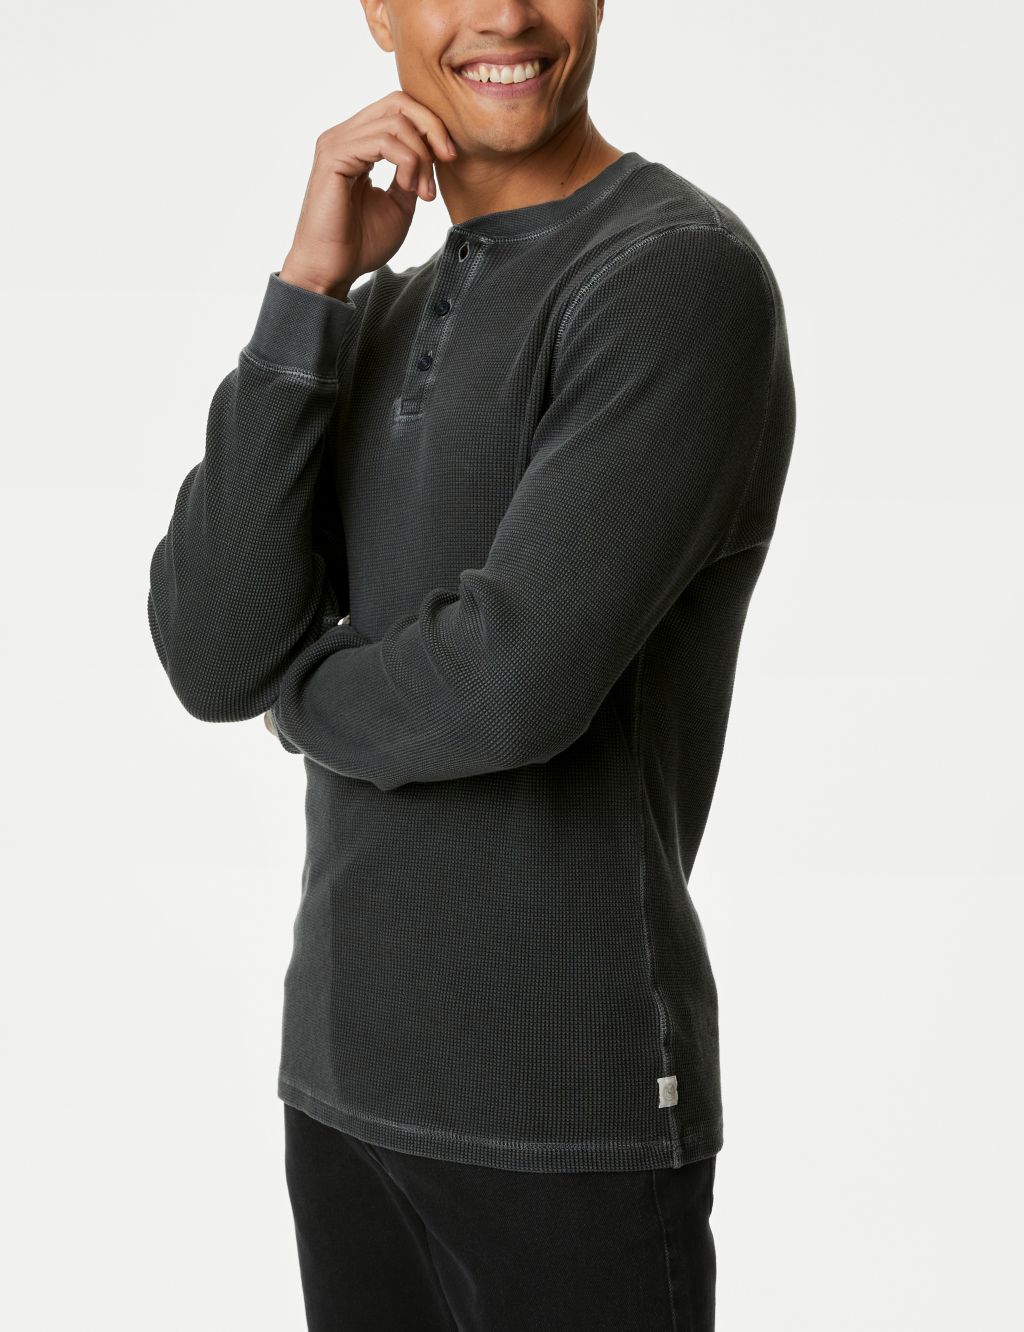 Men's Henley Long Sleeve Shirt Smart Grandad Collar 100%Cotton T-shirt  Blouse UK